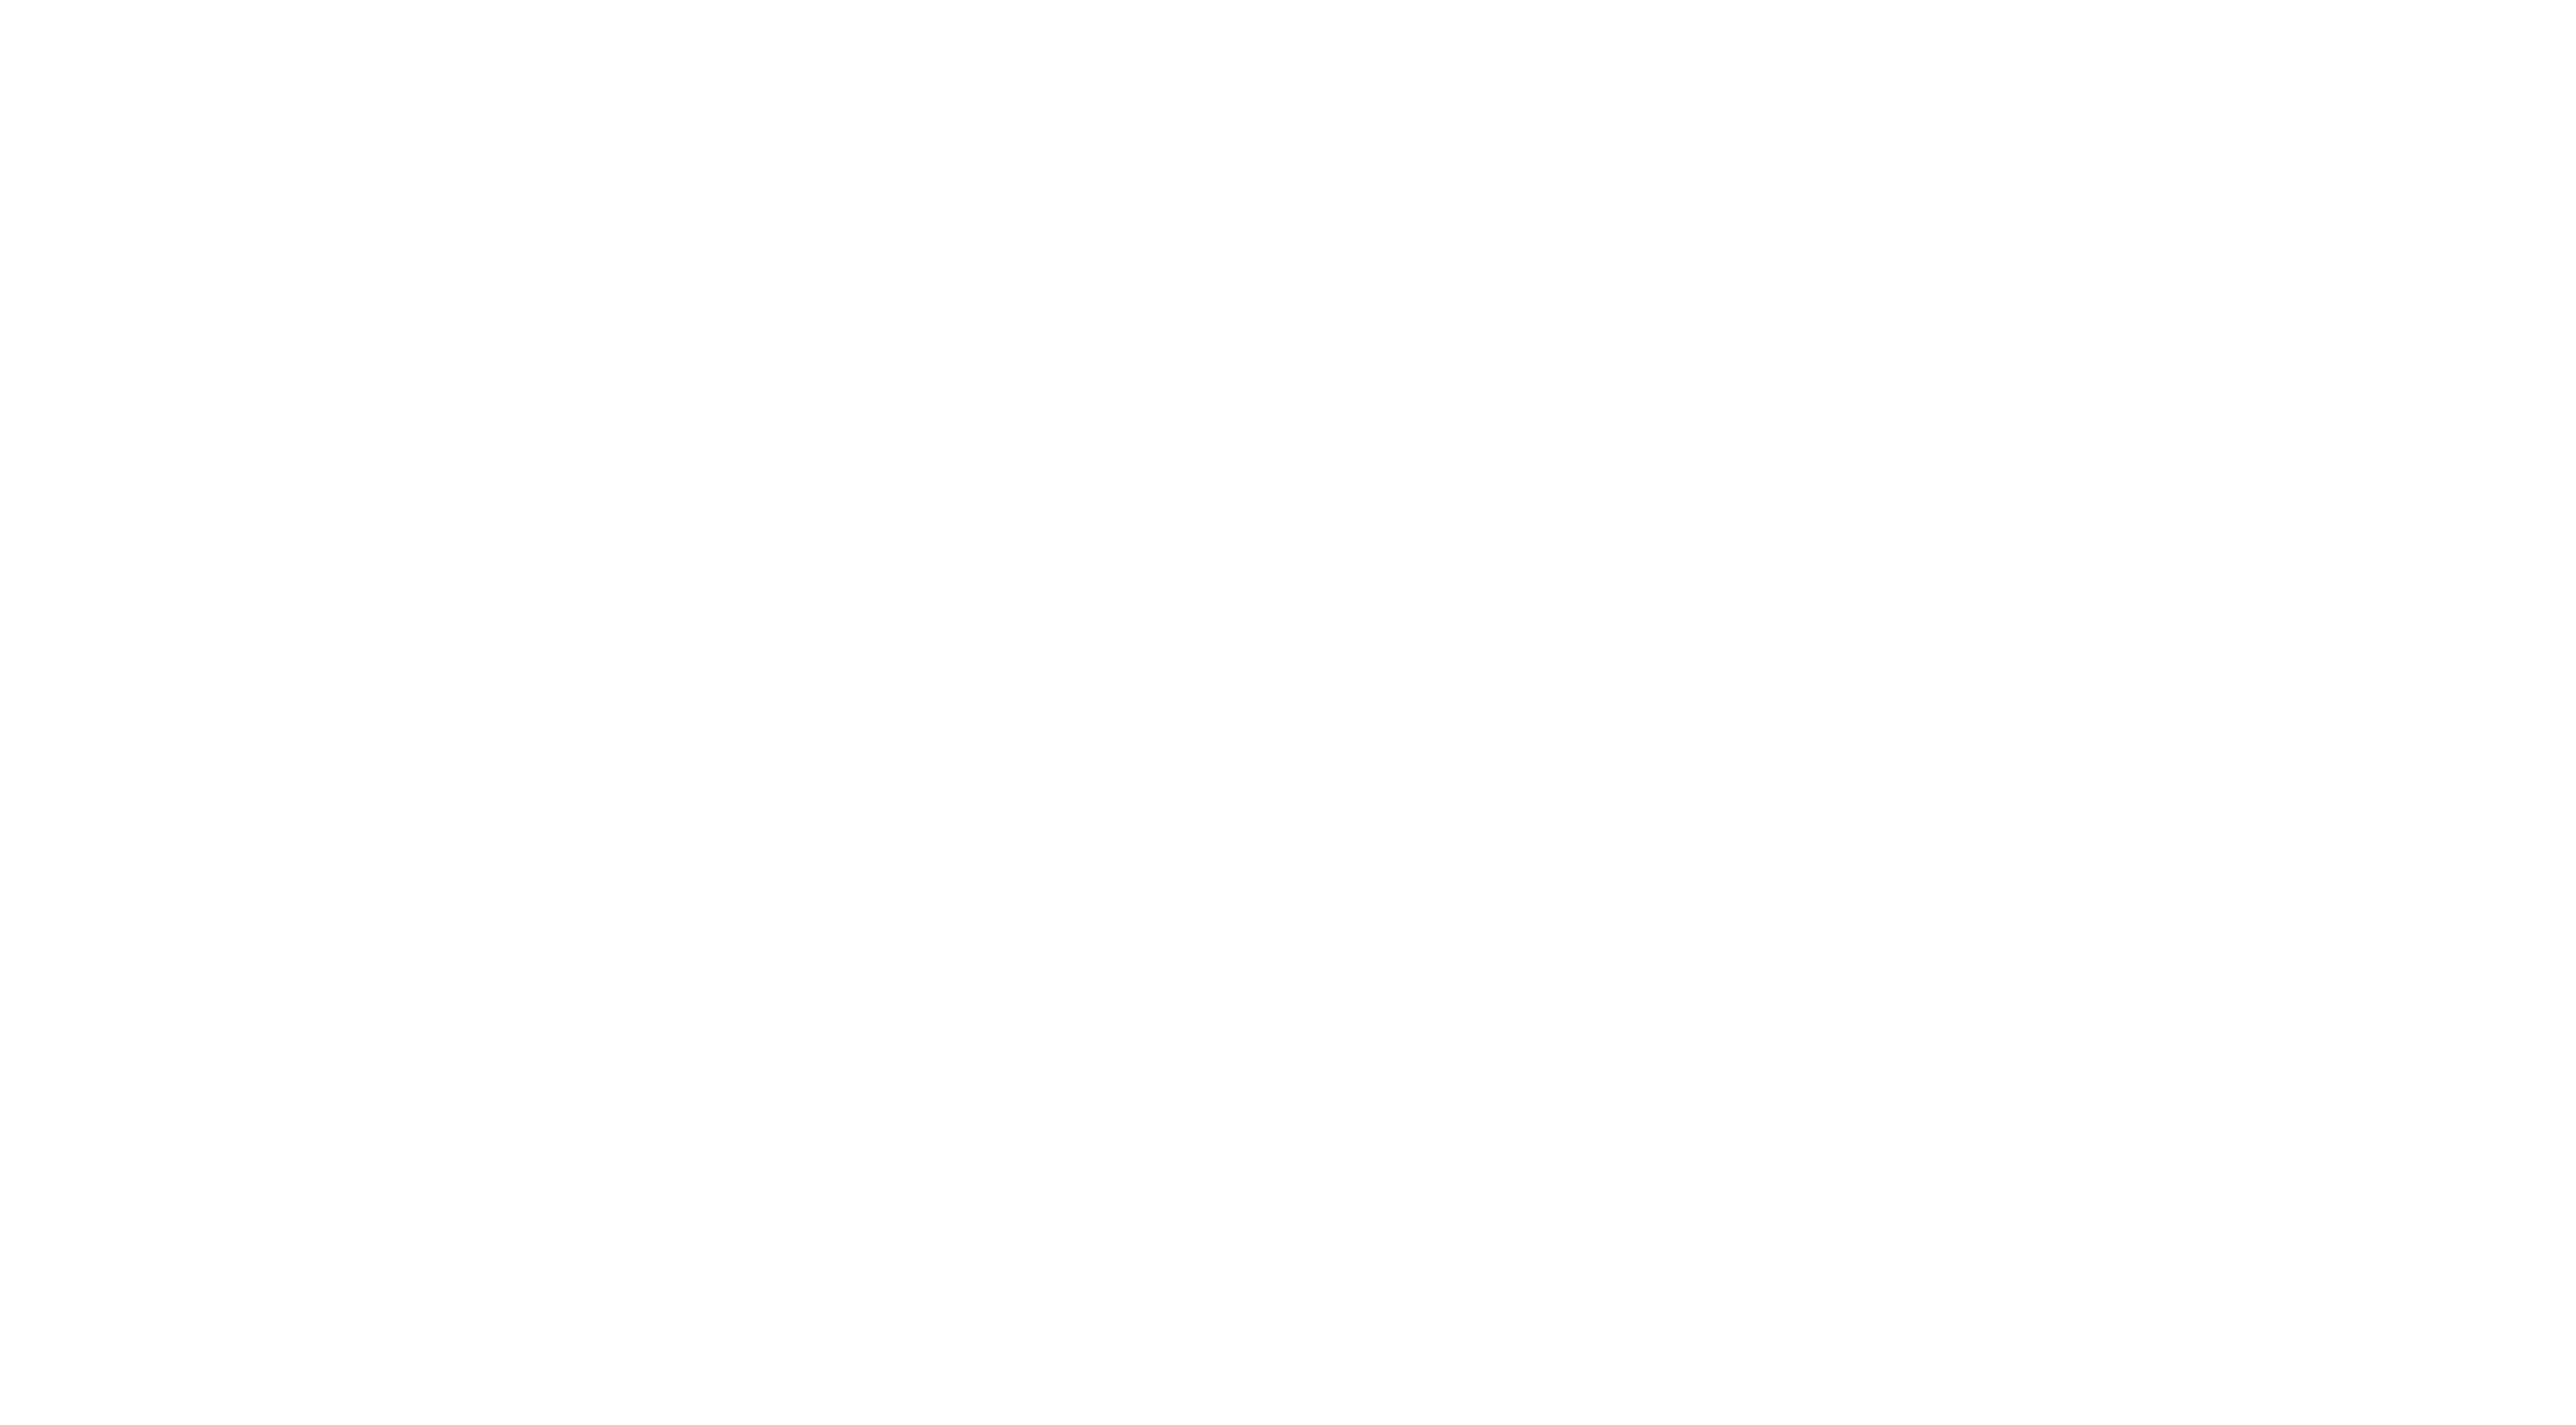 Ororu